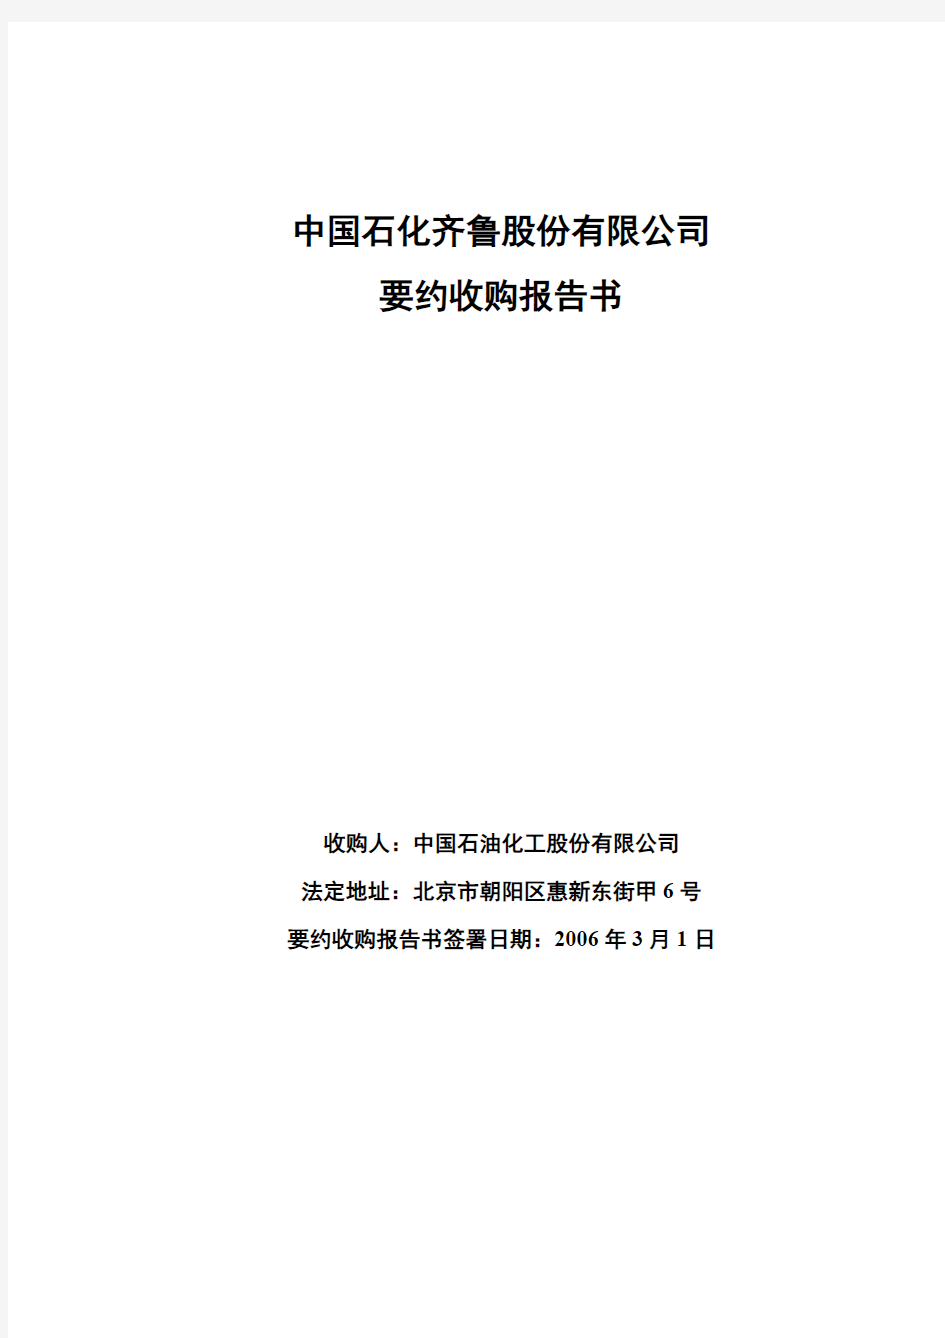 中国石化齐鲁股份有限公司 要约收购报告书